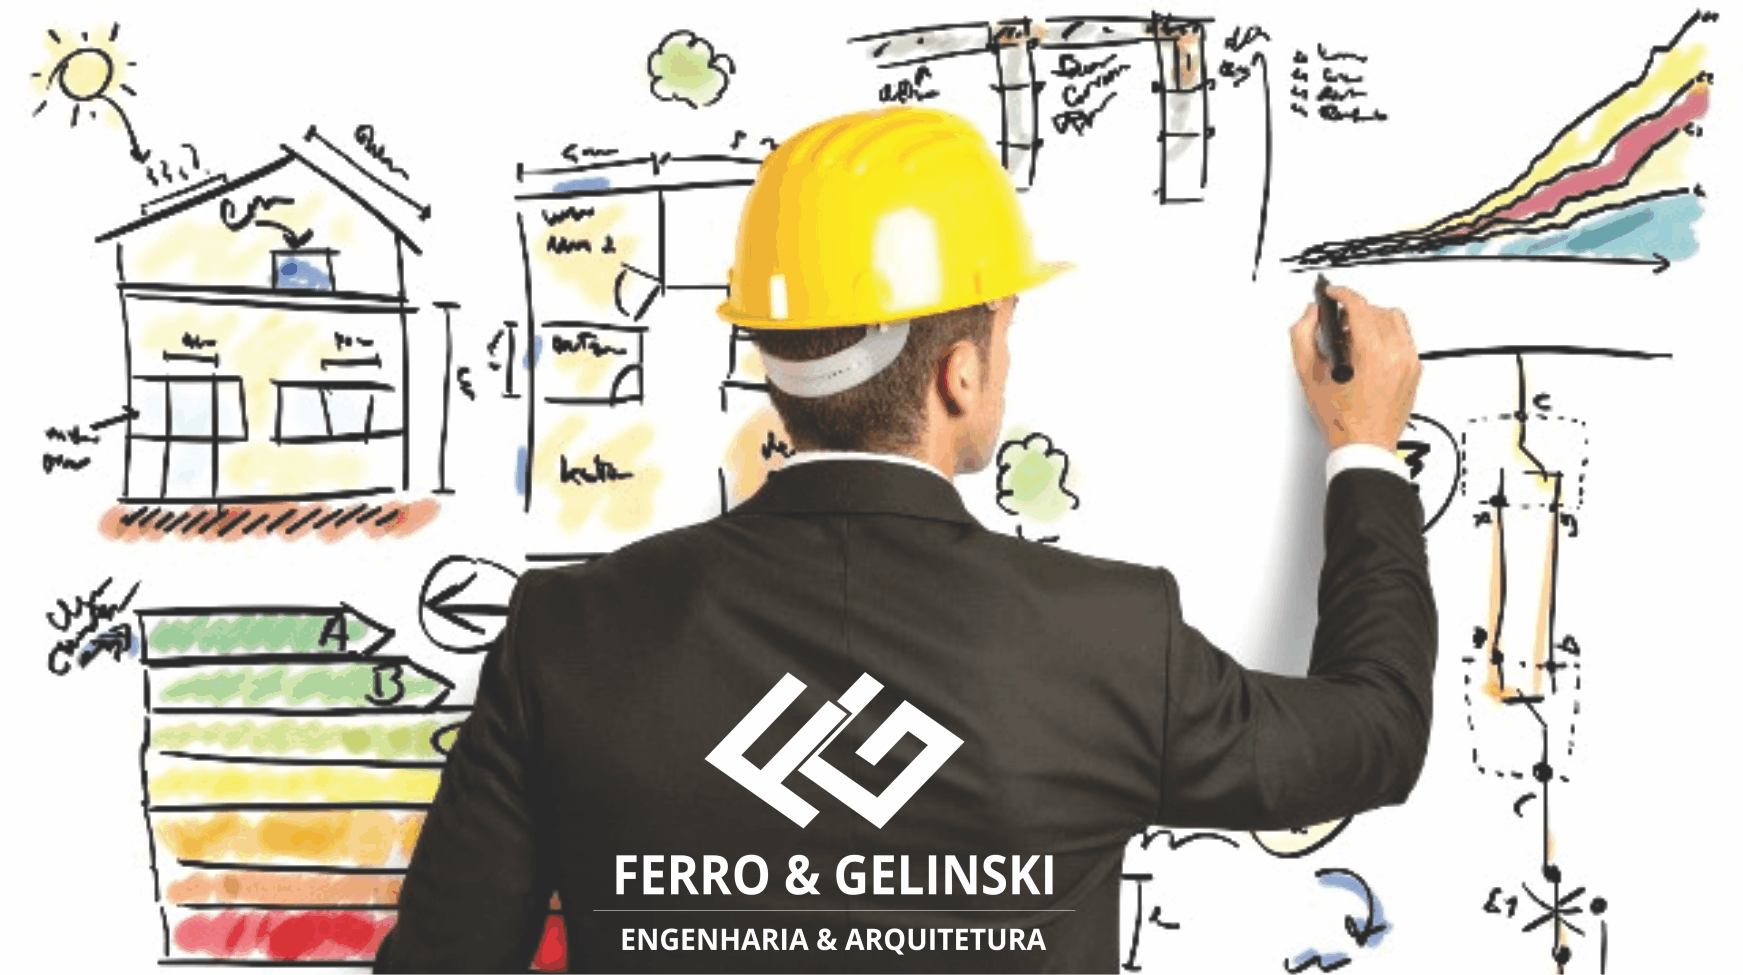 Ferro & Gelinski Engenharia e Arquitetura      RUA DOUTOR PEDROSA, 68, CURITIBA - PR  Fones: (41) 99719-6959 / (41) 99999-2052